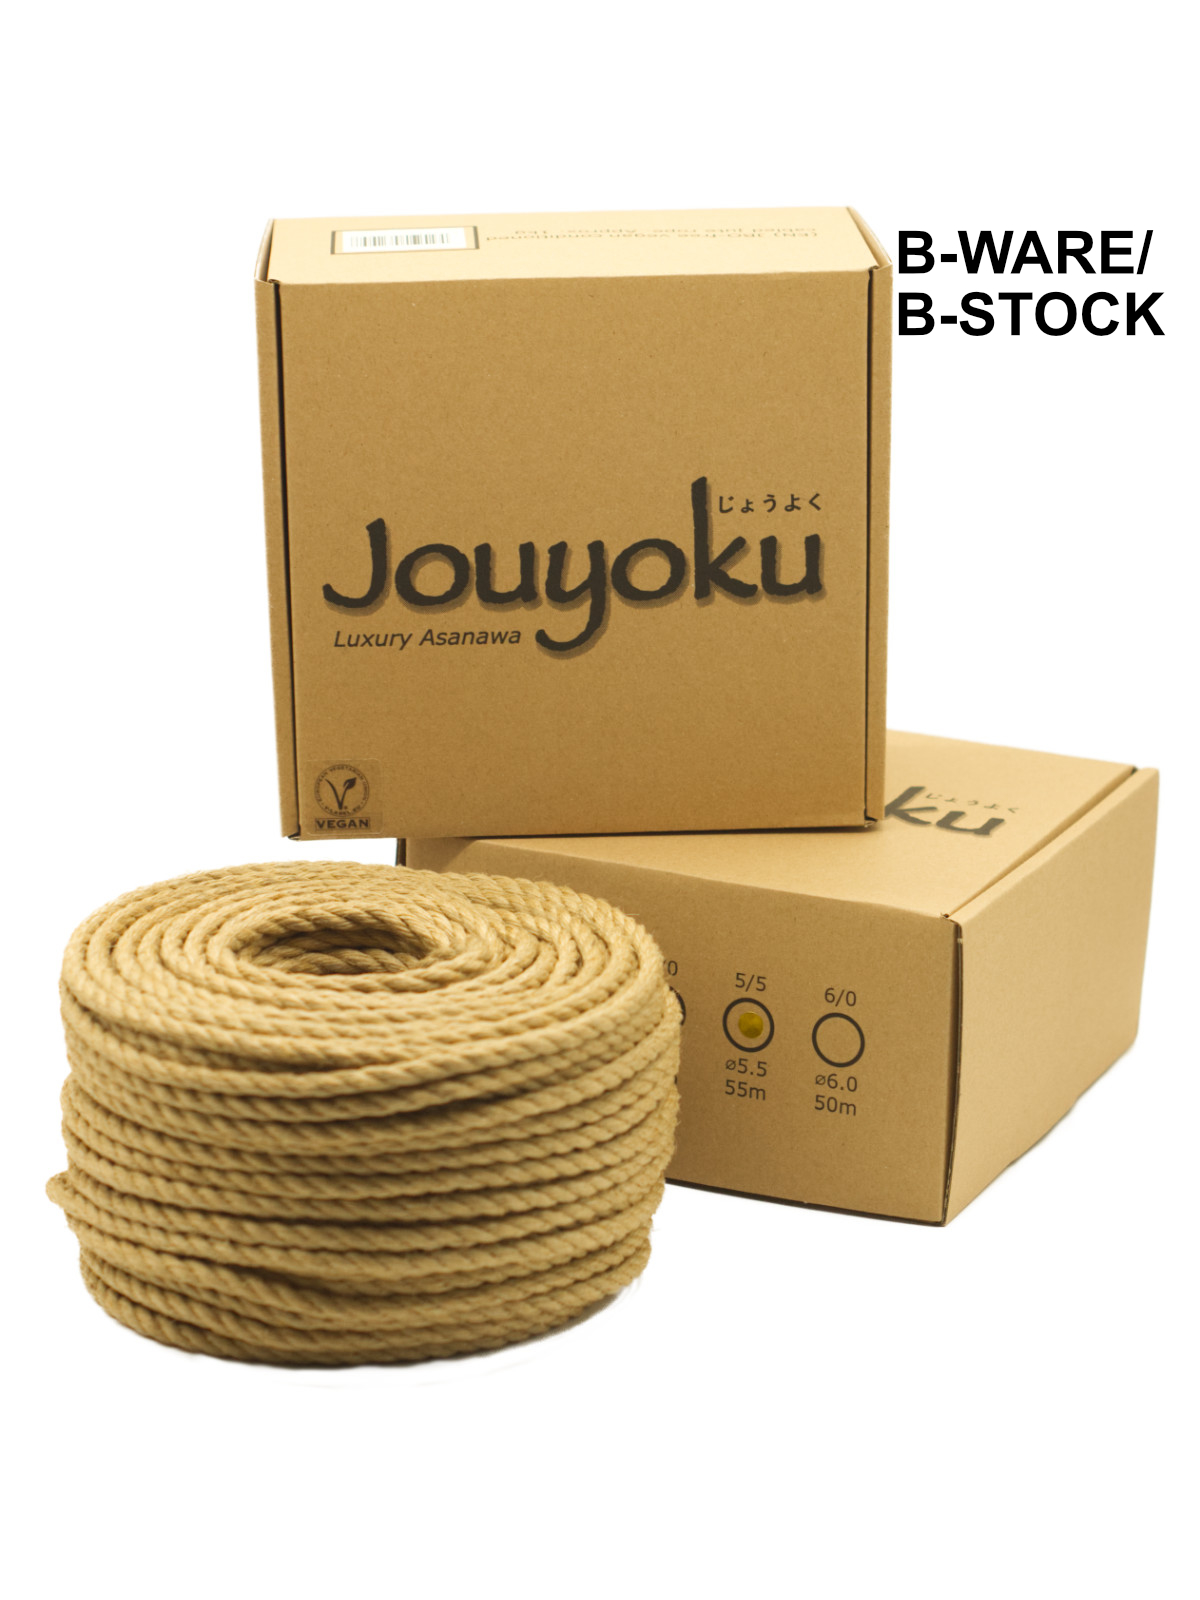 B-STOCK Jouyoku MINI-ROLL - jute rope for Shibari, Kinbaku bondage, ~1kg